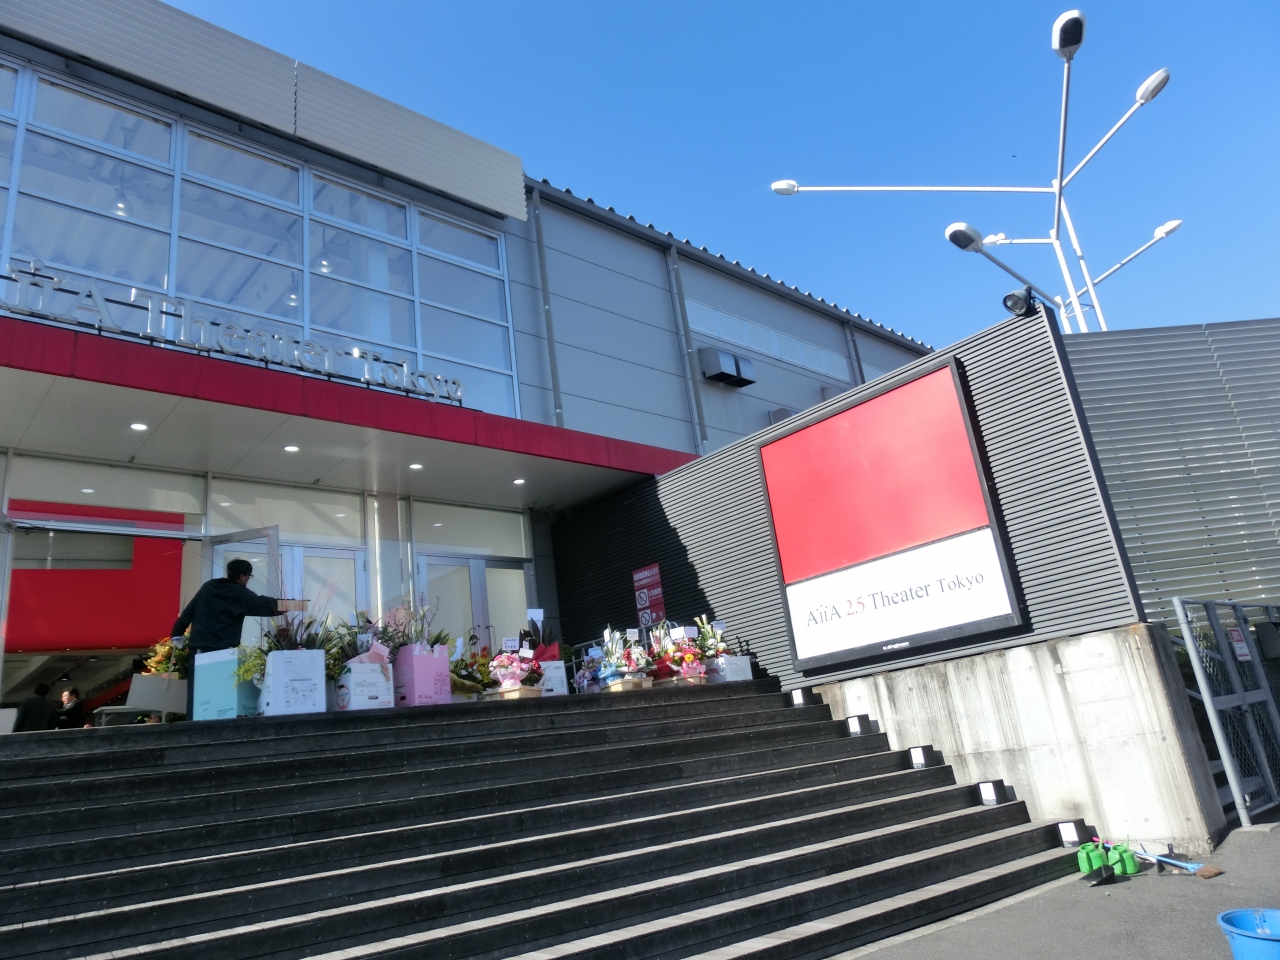 ミュージカル『刀剣乱舞』の会場となった「AiiA 2.5 Theater Tokyo」の噂・エピソードまとめ！観劇する際の不安要素が多い!?【刀ミュ】